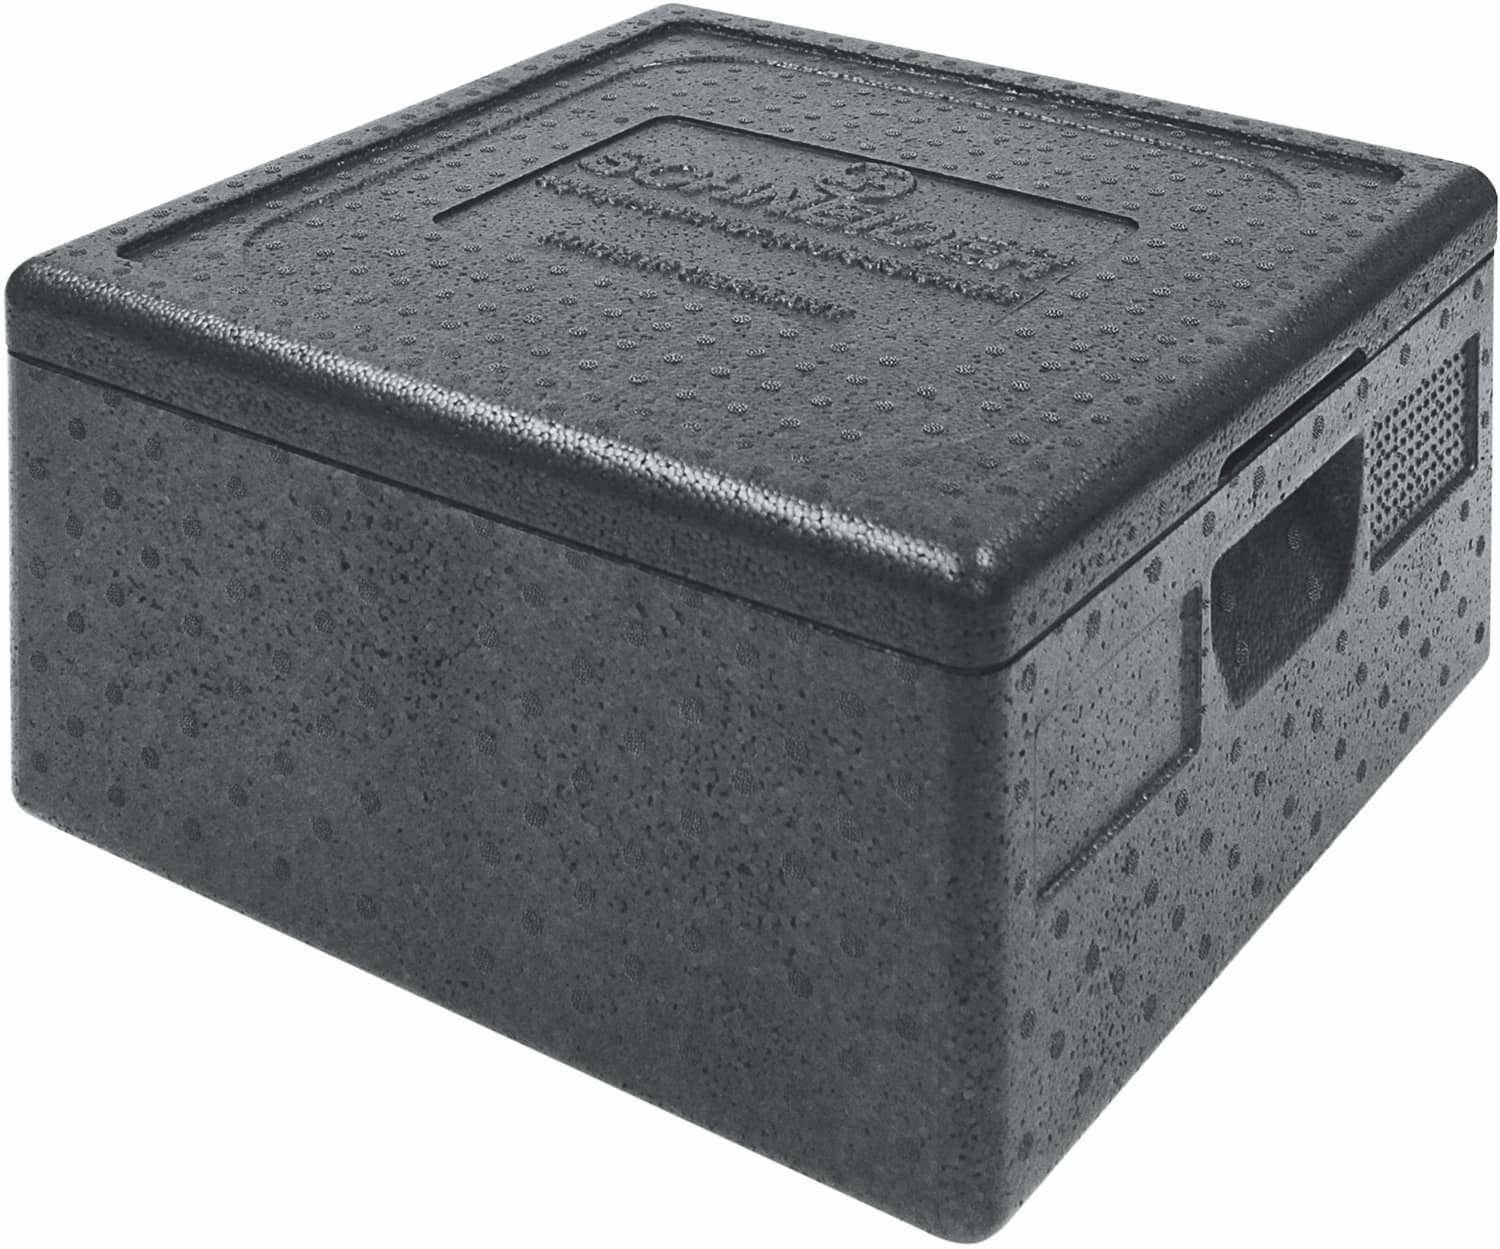 EPP insulation box TOP-BOX PIZZA SMALL